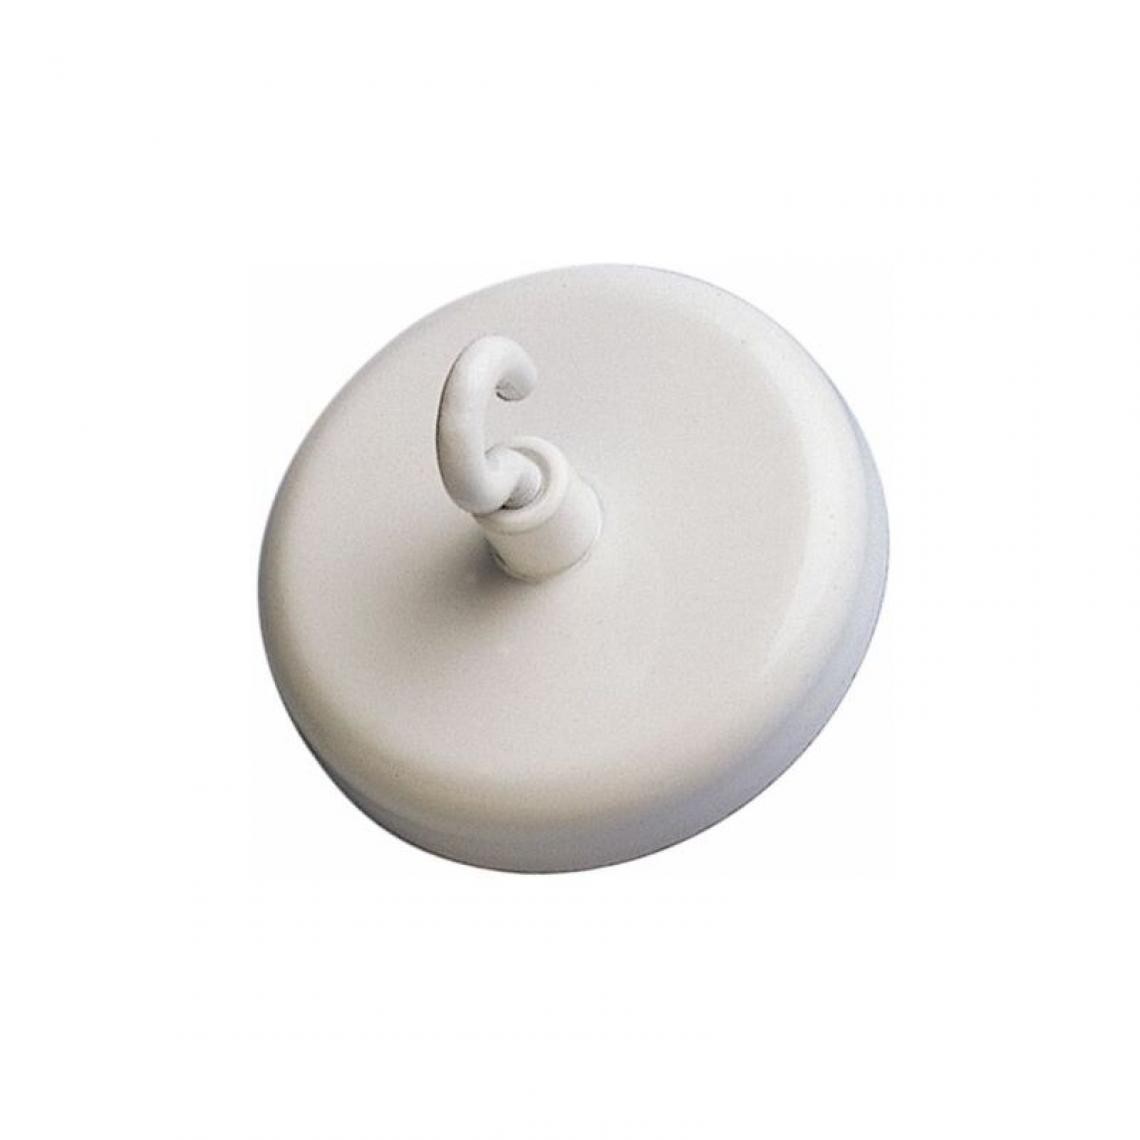 Maul - MAUL Crochet magnétique, diamètre: 25 mm, blanc () - Visserie